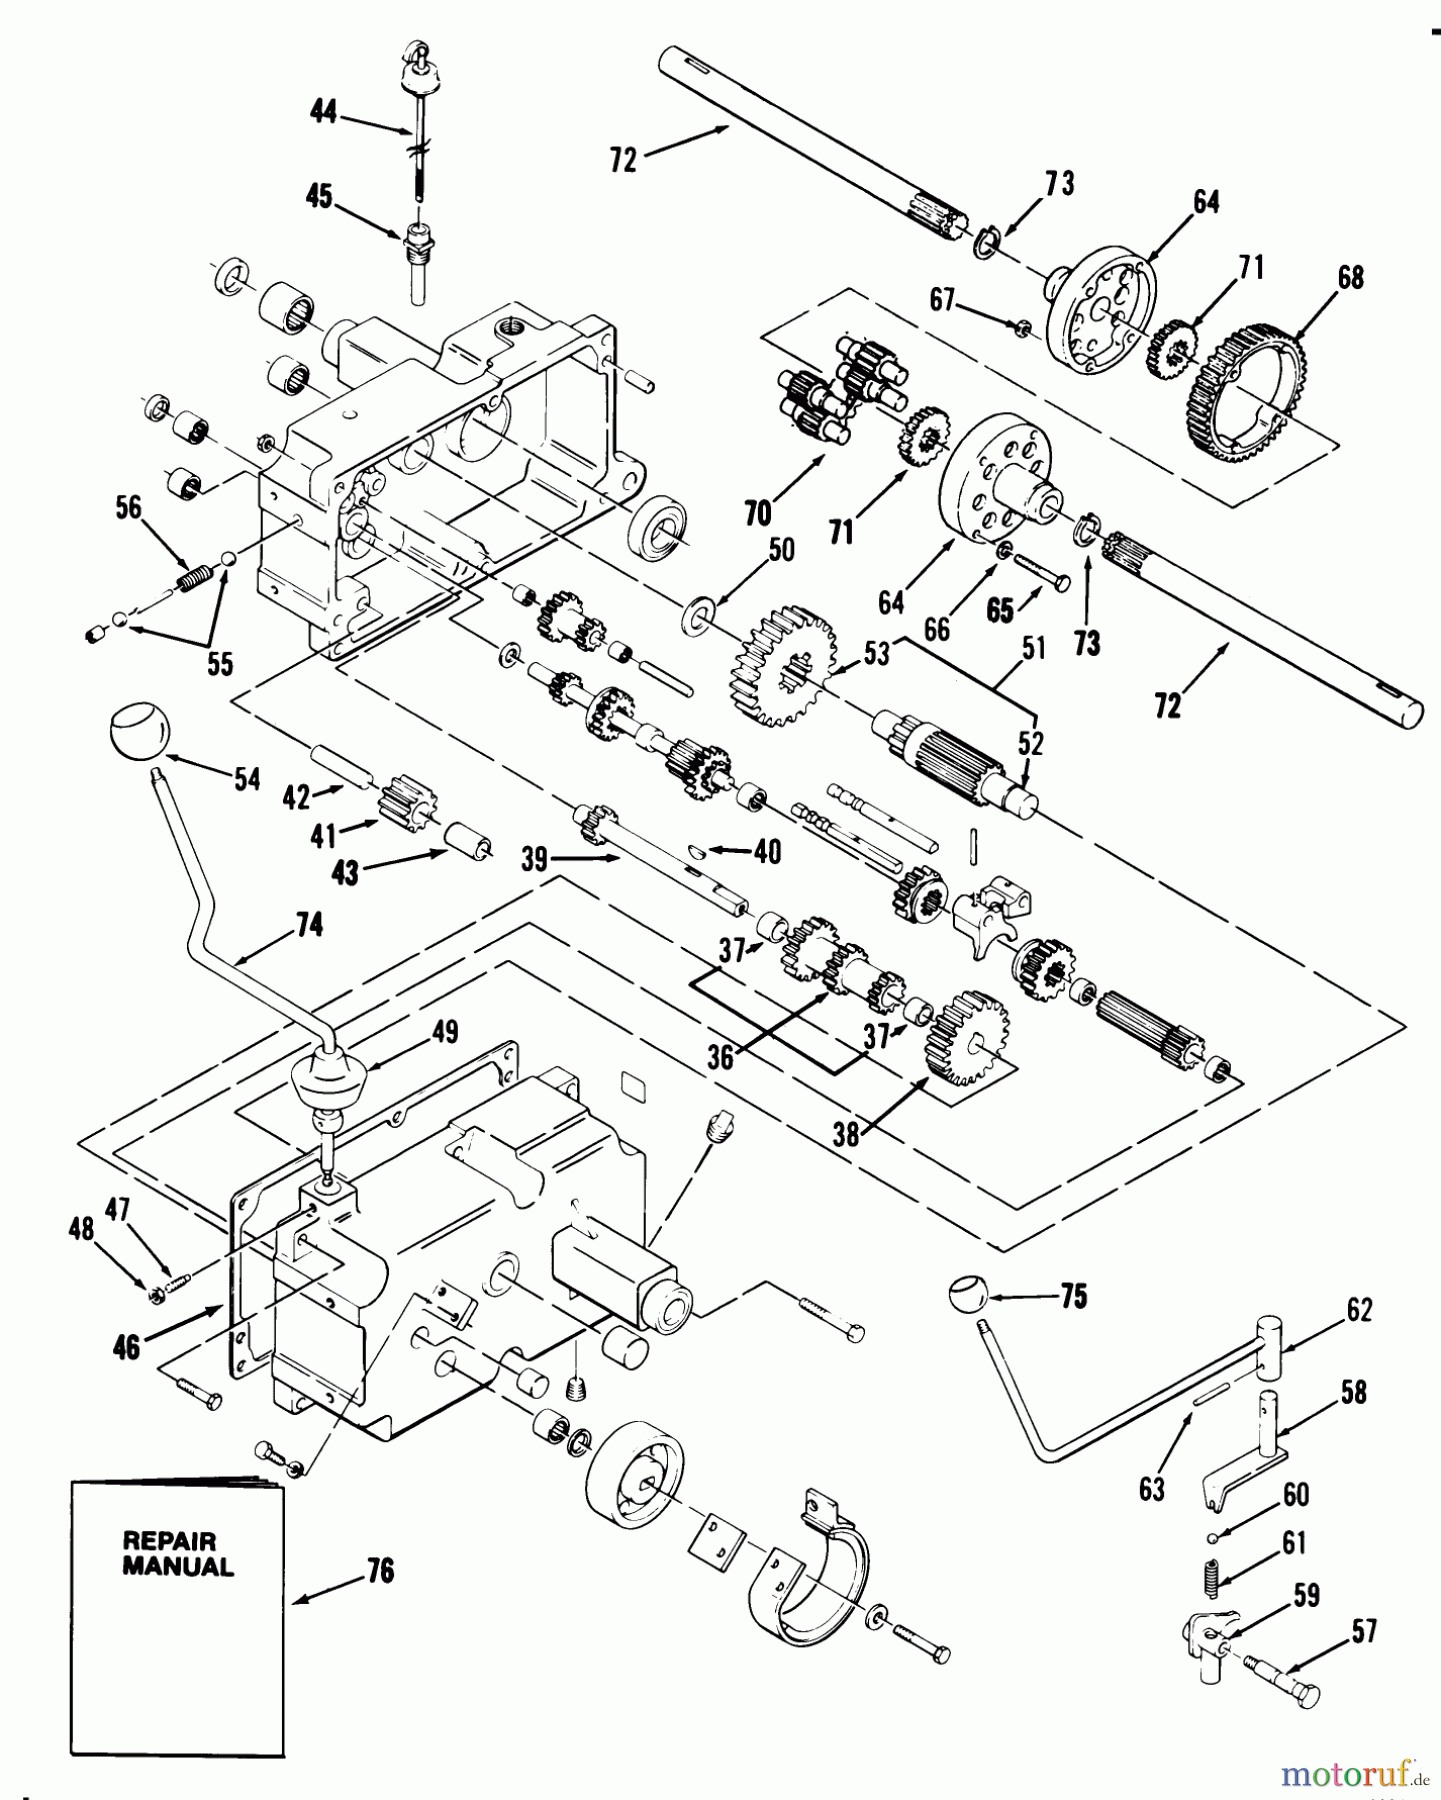  Toro Neu Mowers, Lawn & Garden Tractor Seite 1 21-12K805 (312-8) - Toro 312-8 Garden Tractor, 1988 MECHANICAL TRANSMISSION-8-SPEED #2